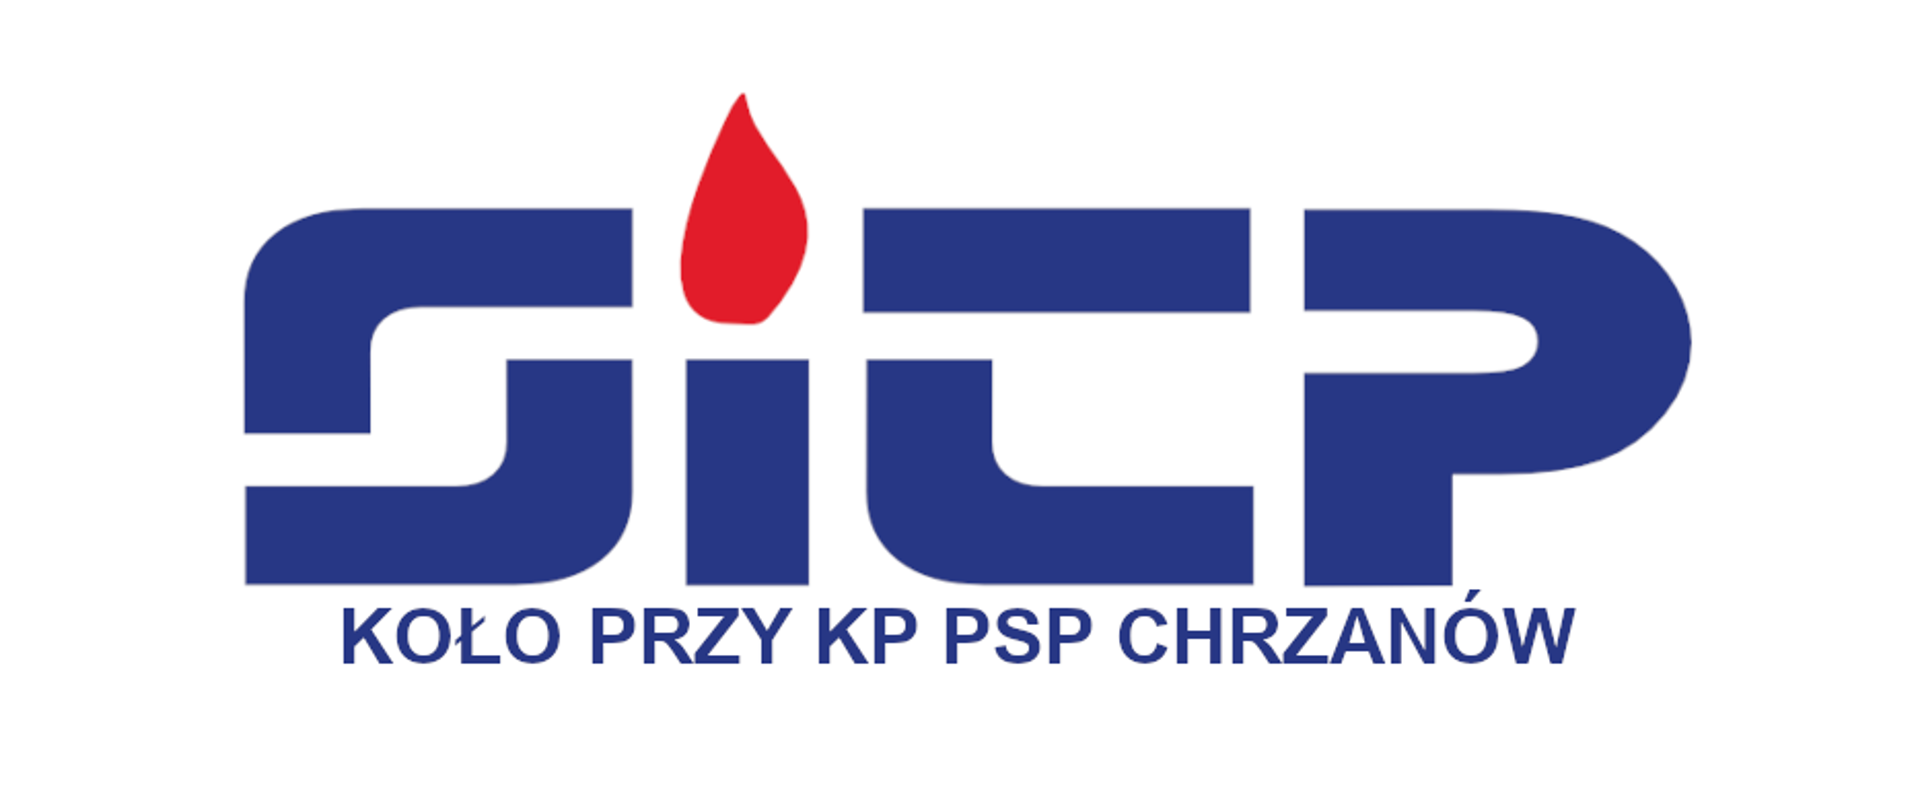 Logotyp SITP Koło przy KP PSP Chrzanów